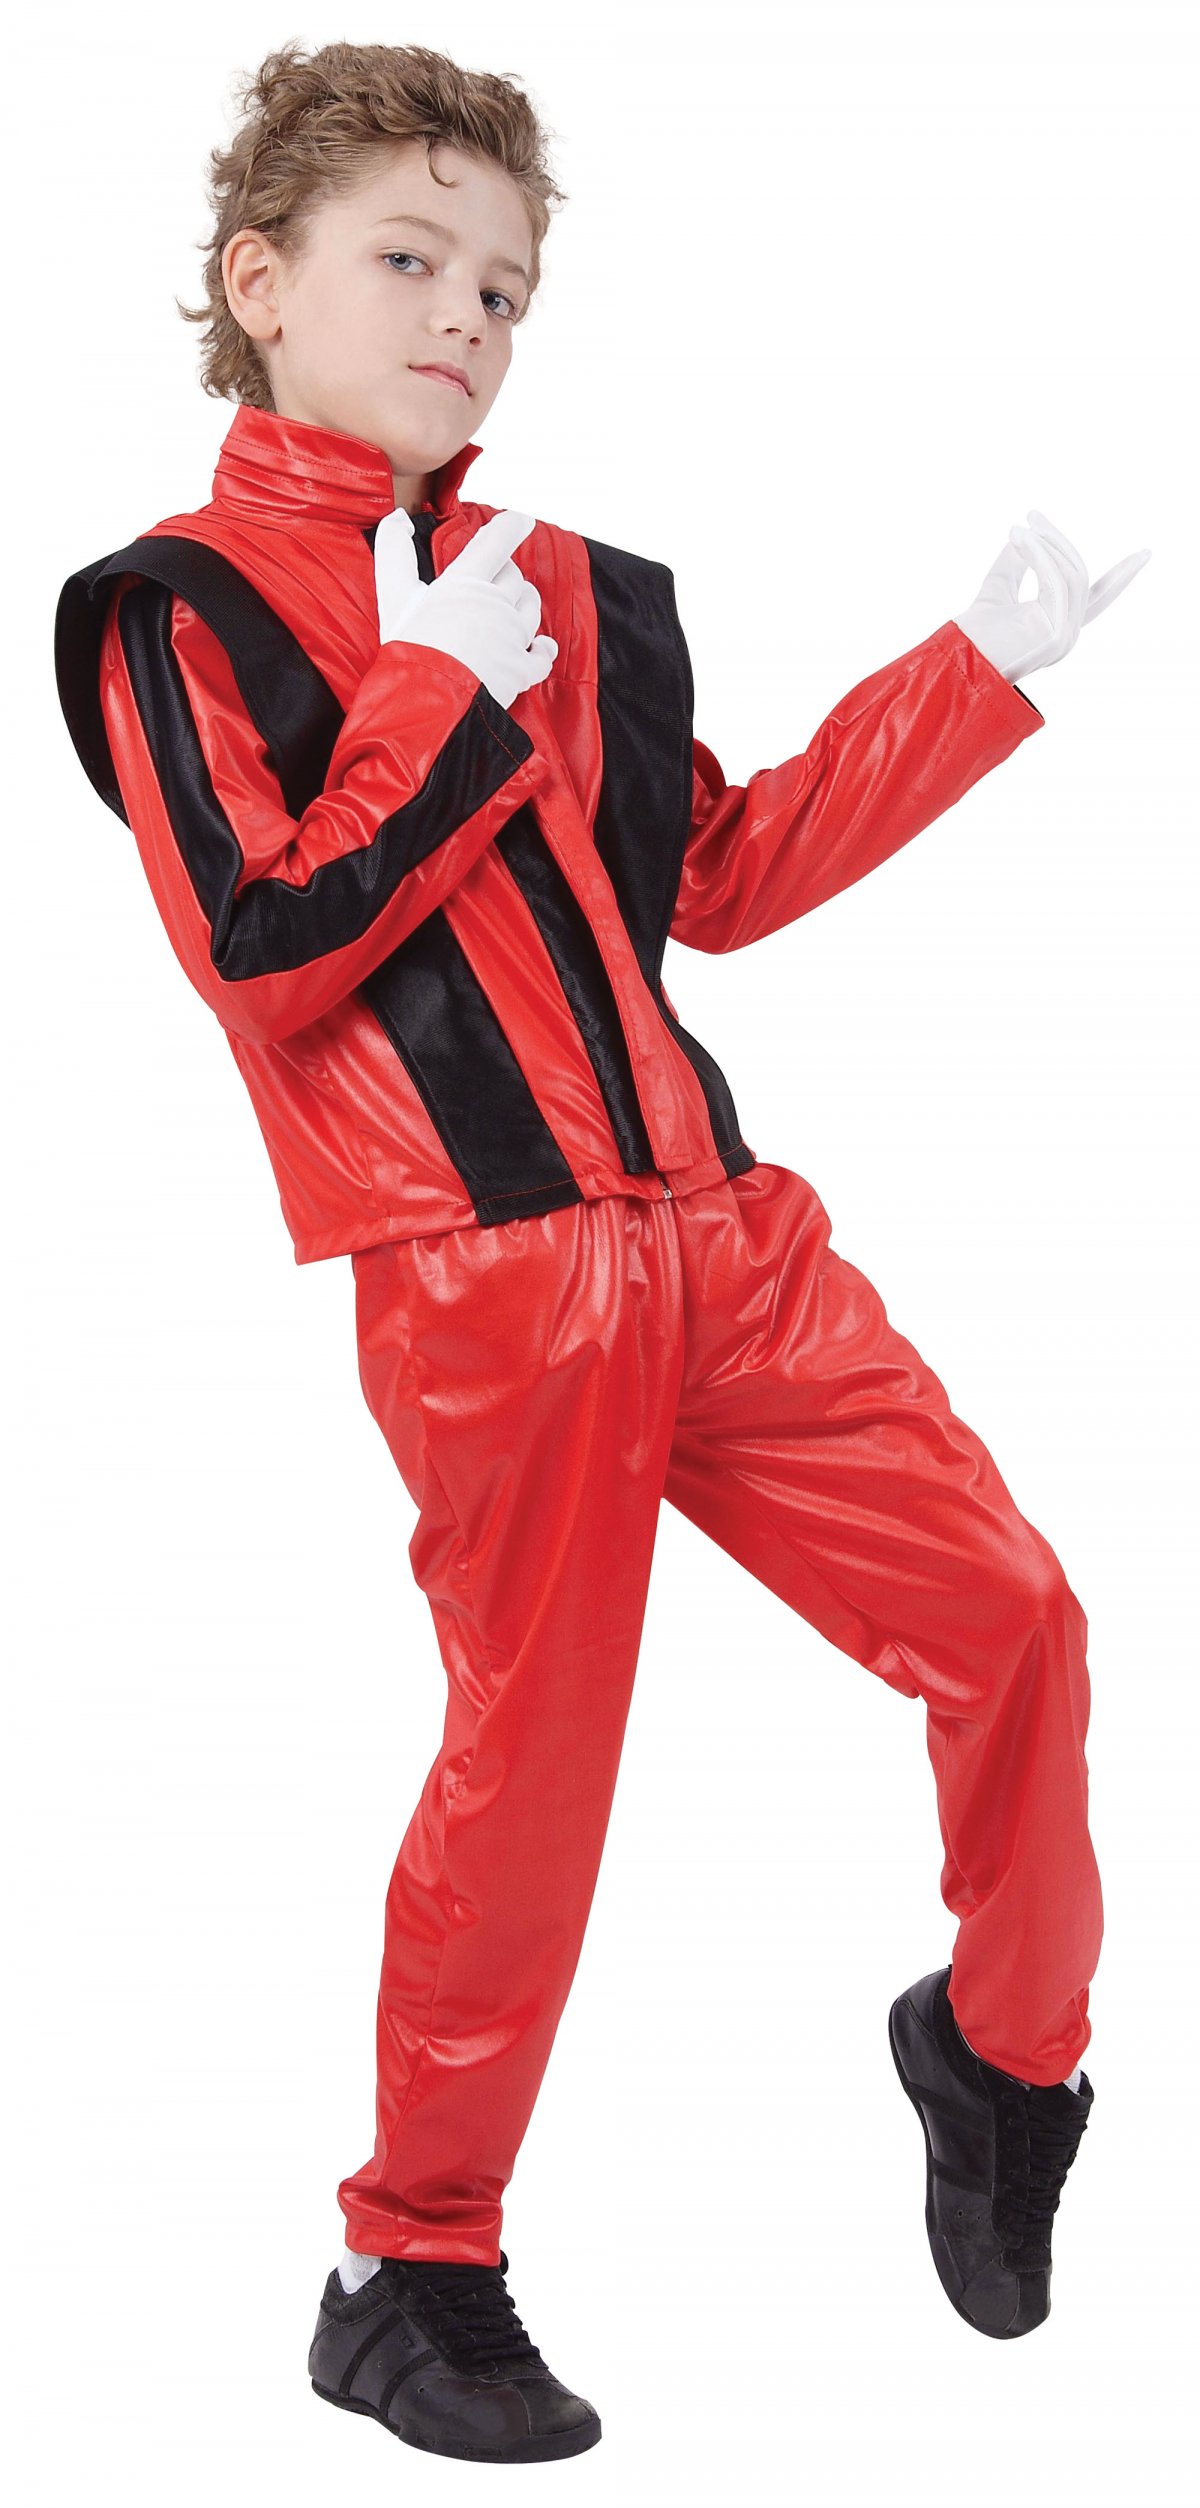 Jep stereoanlæg efterklang Michael Jackson kostume drenge | Køb Michael Jackson Kostume!